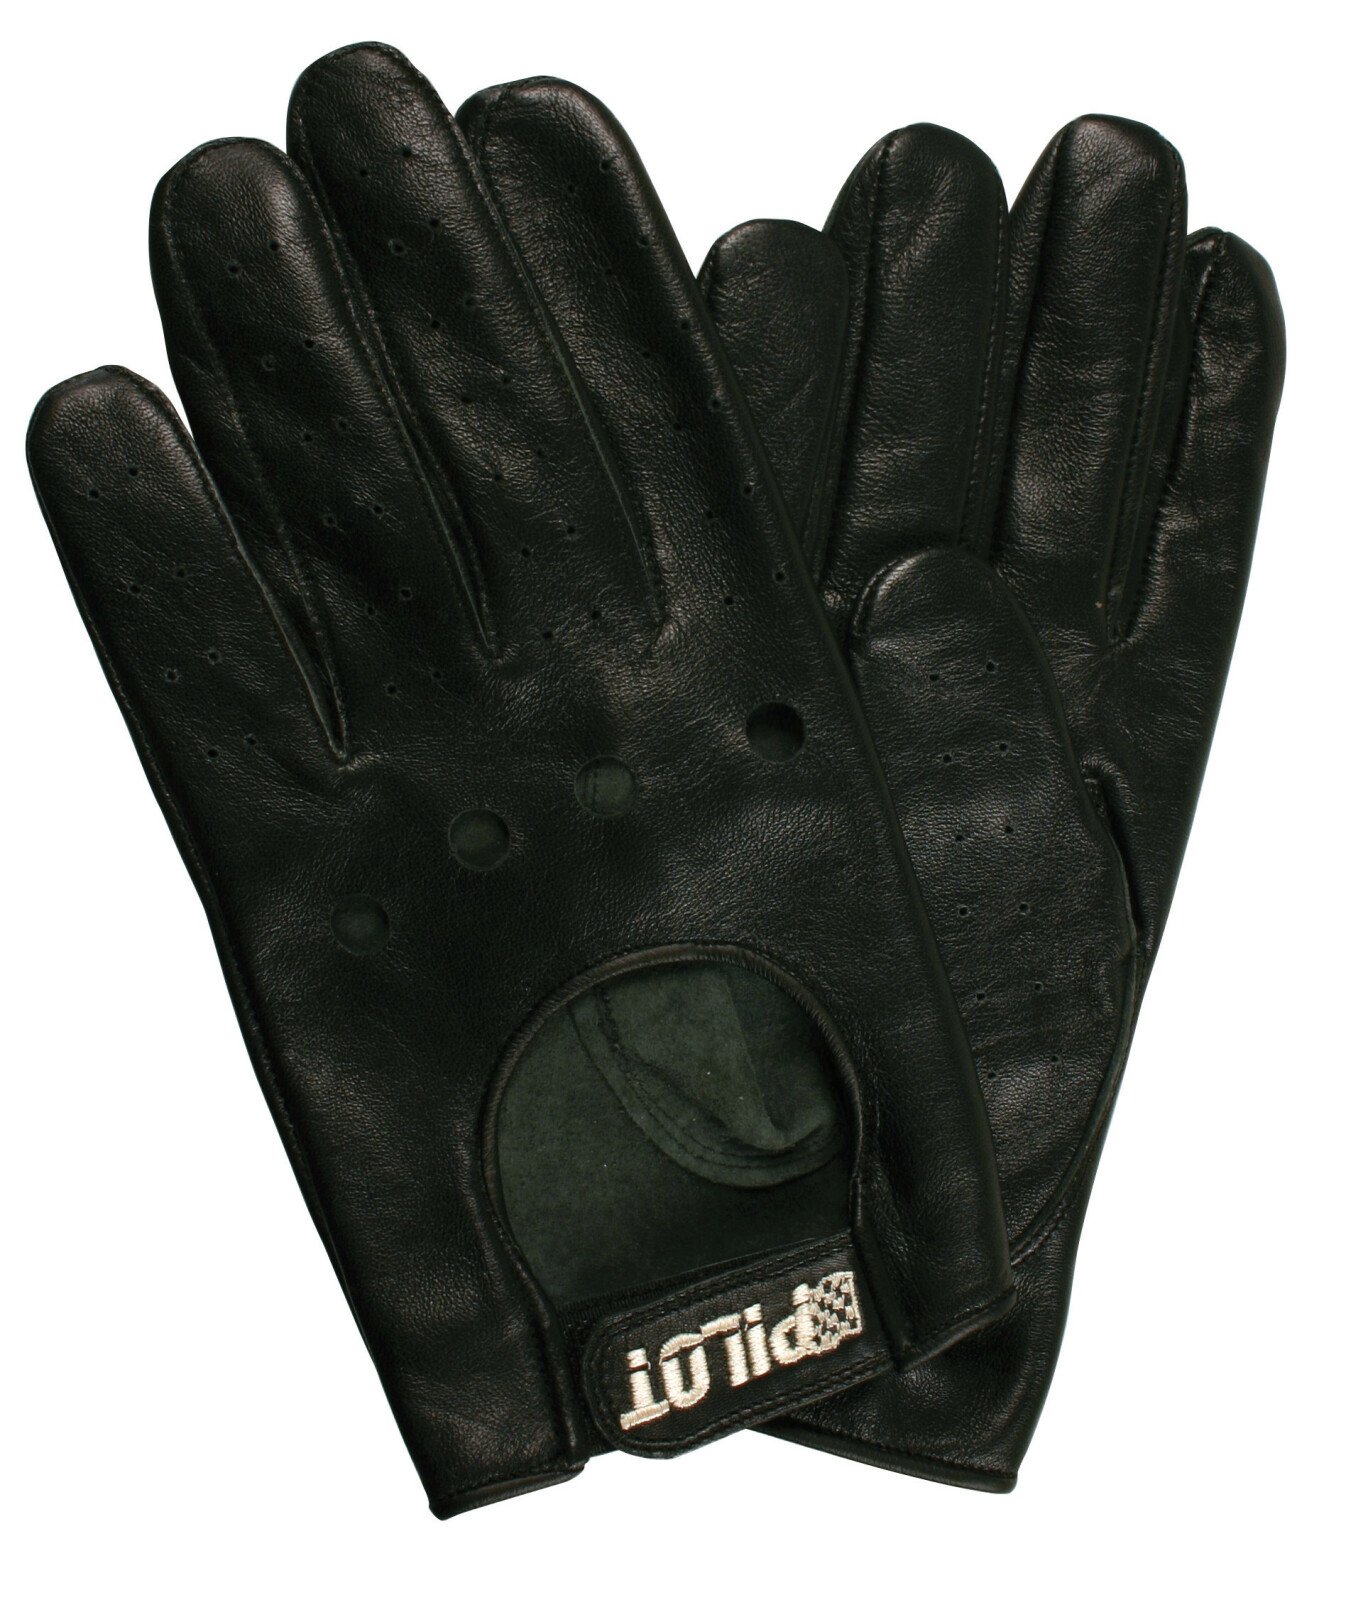 Pilot-3 driving gloves - M - Black thumb